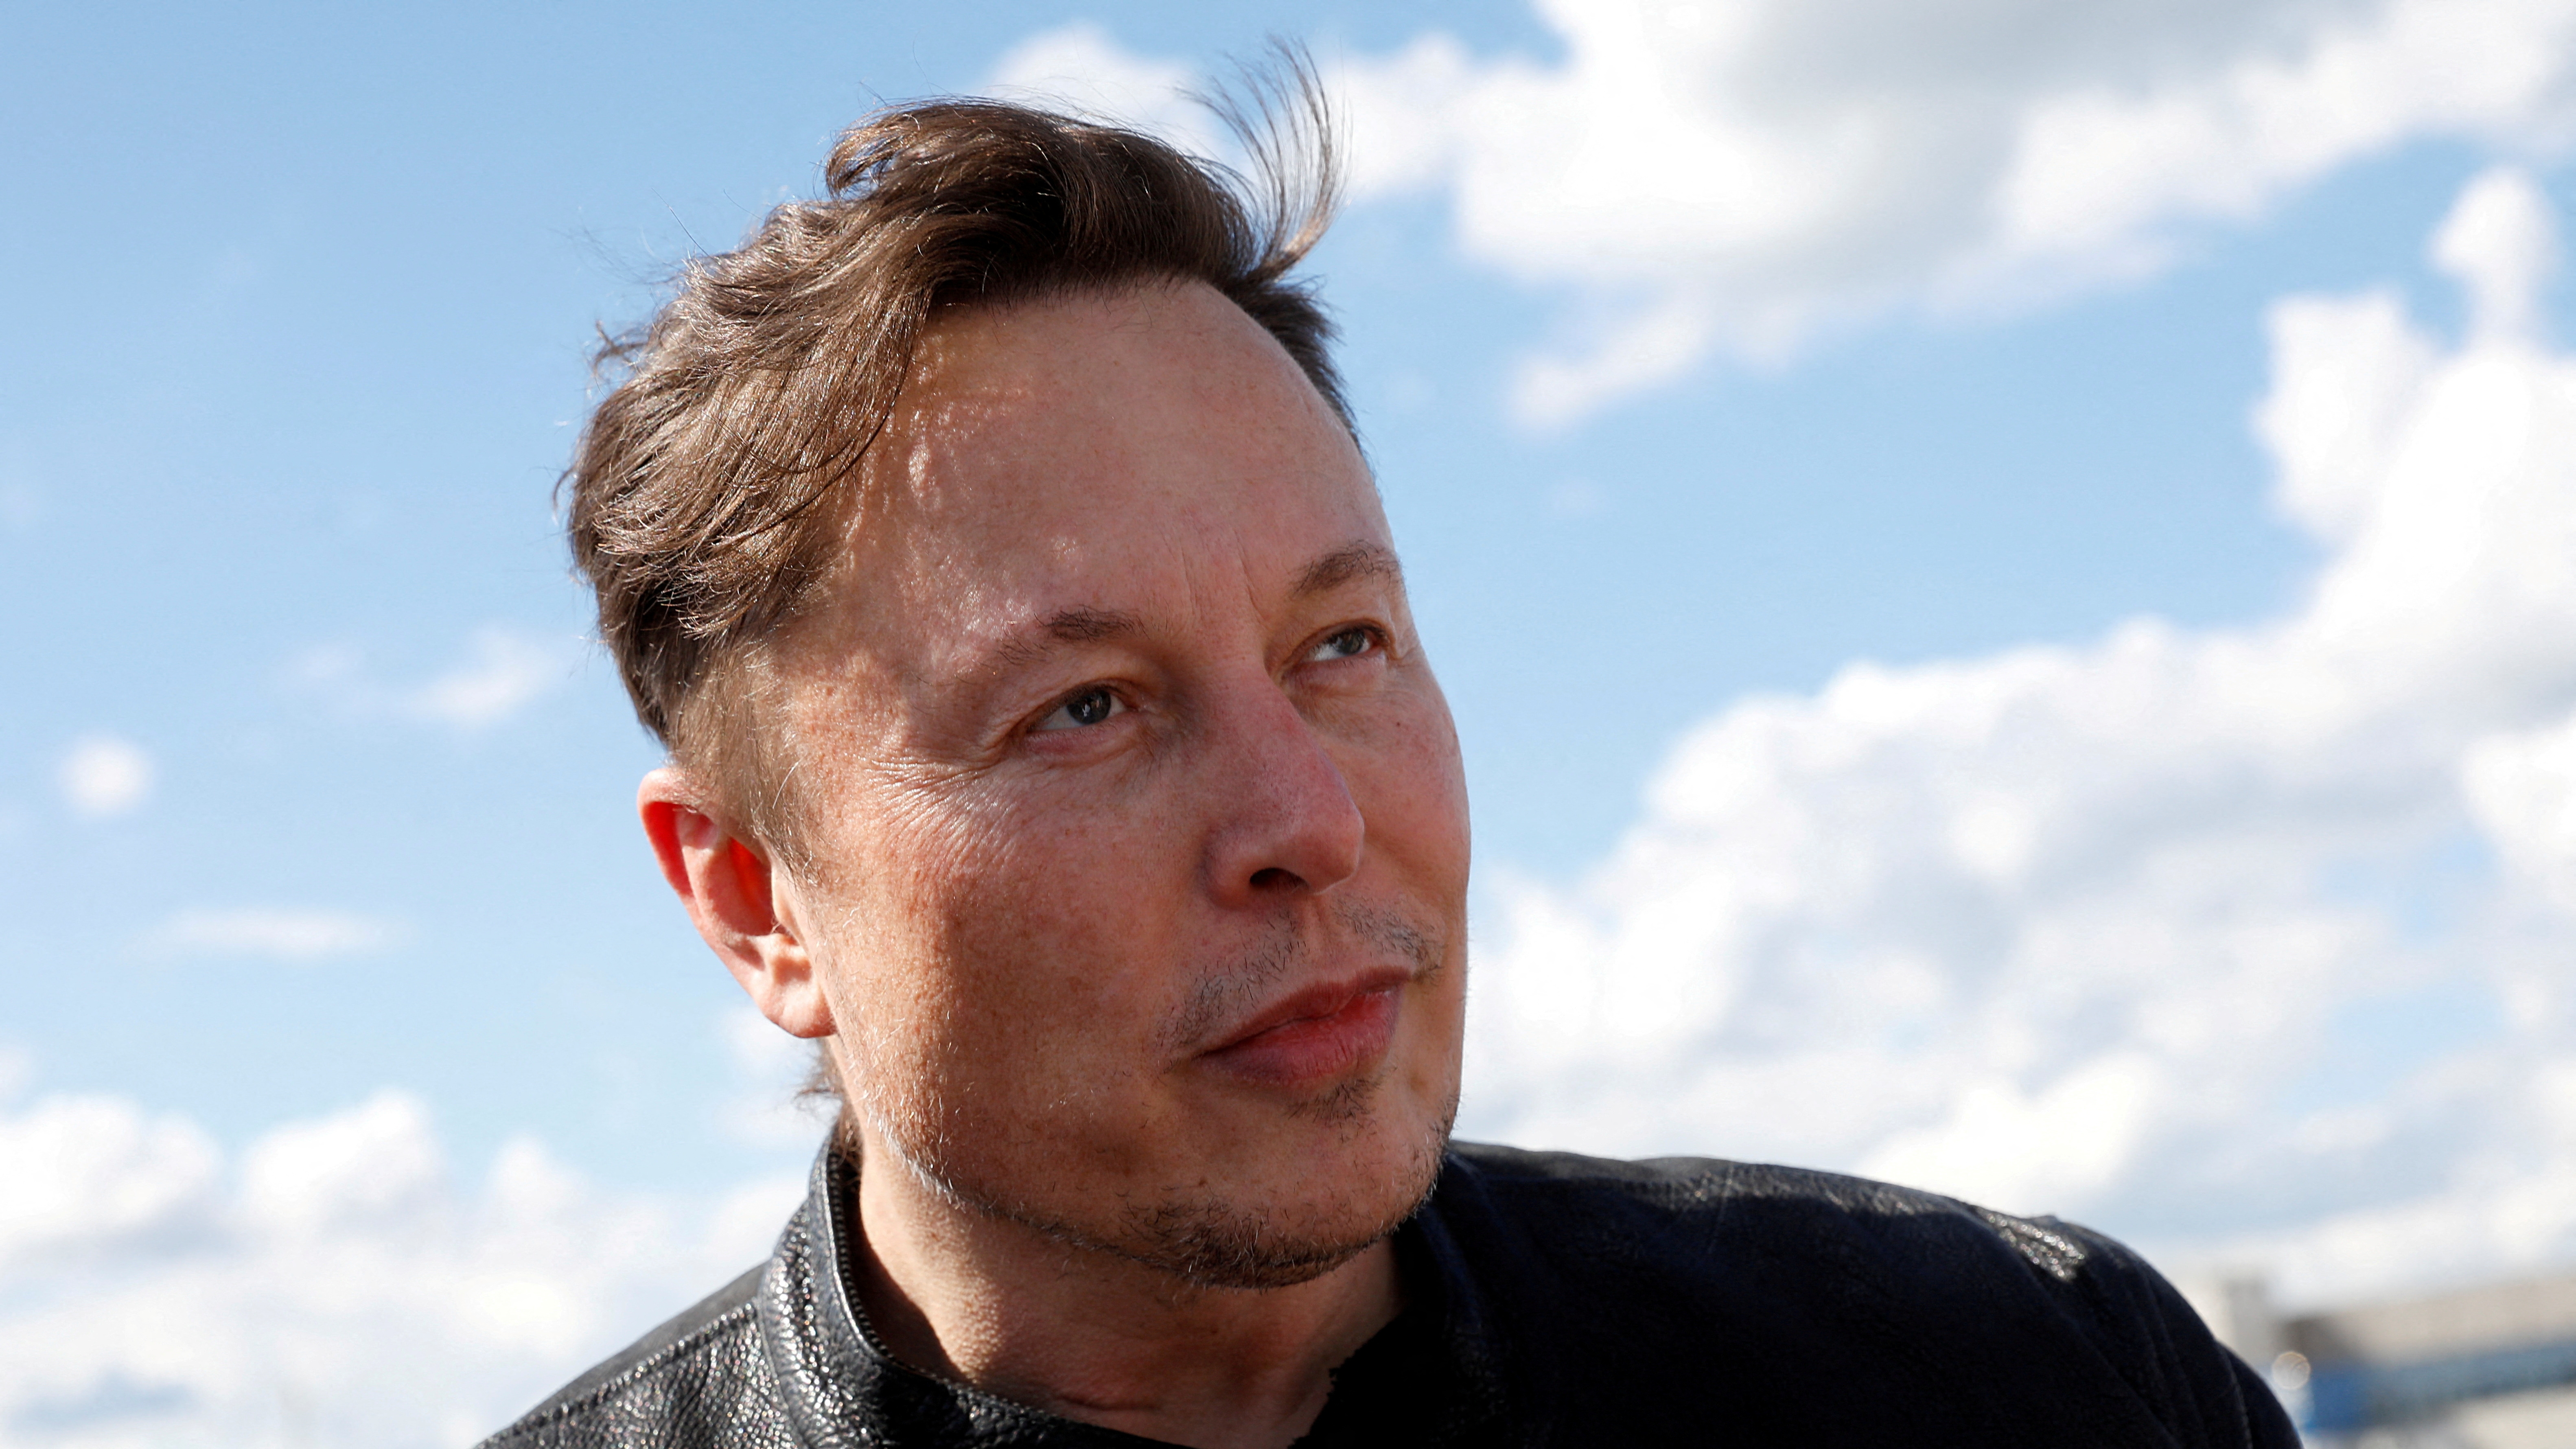 Investigan por maltrato animal a la empresa de Elon Musk que prometió implantes en el cerebro humano